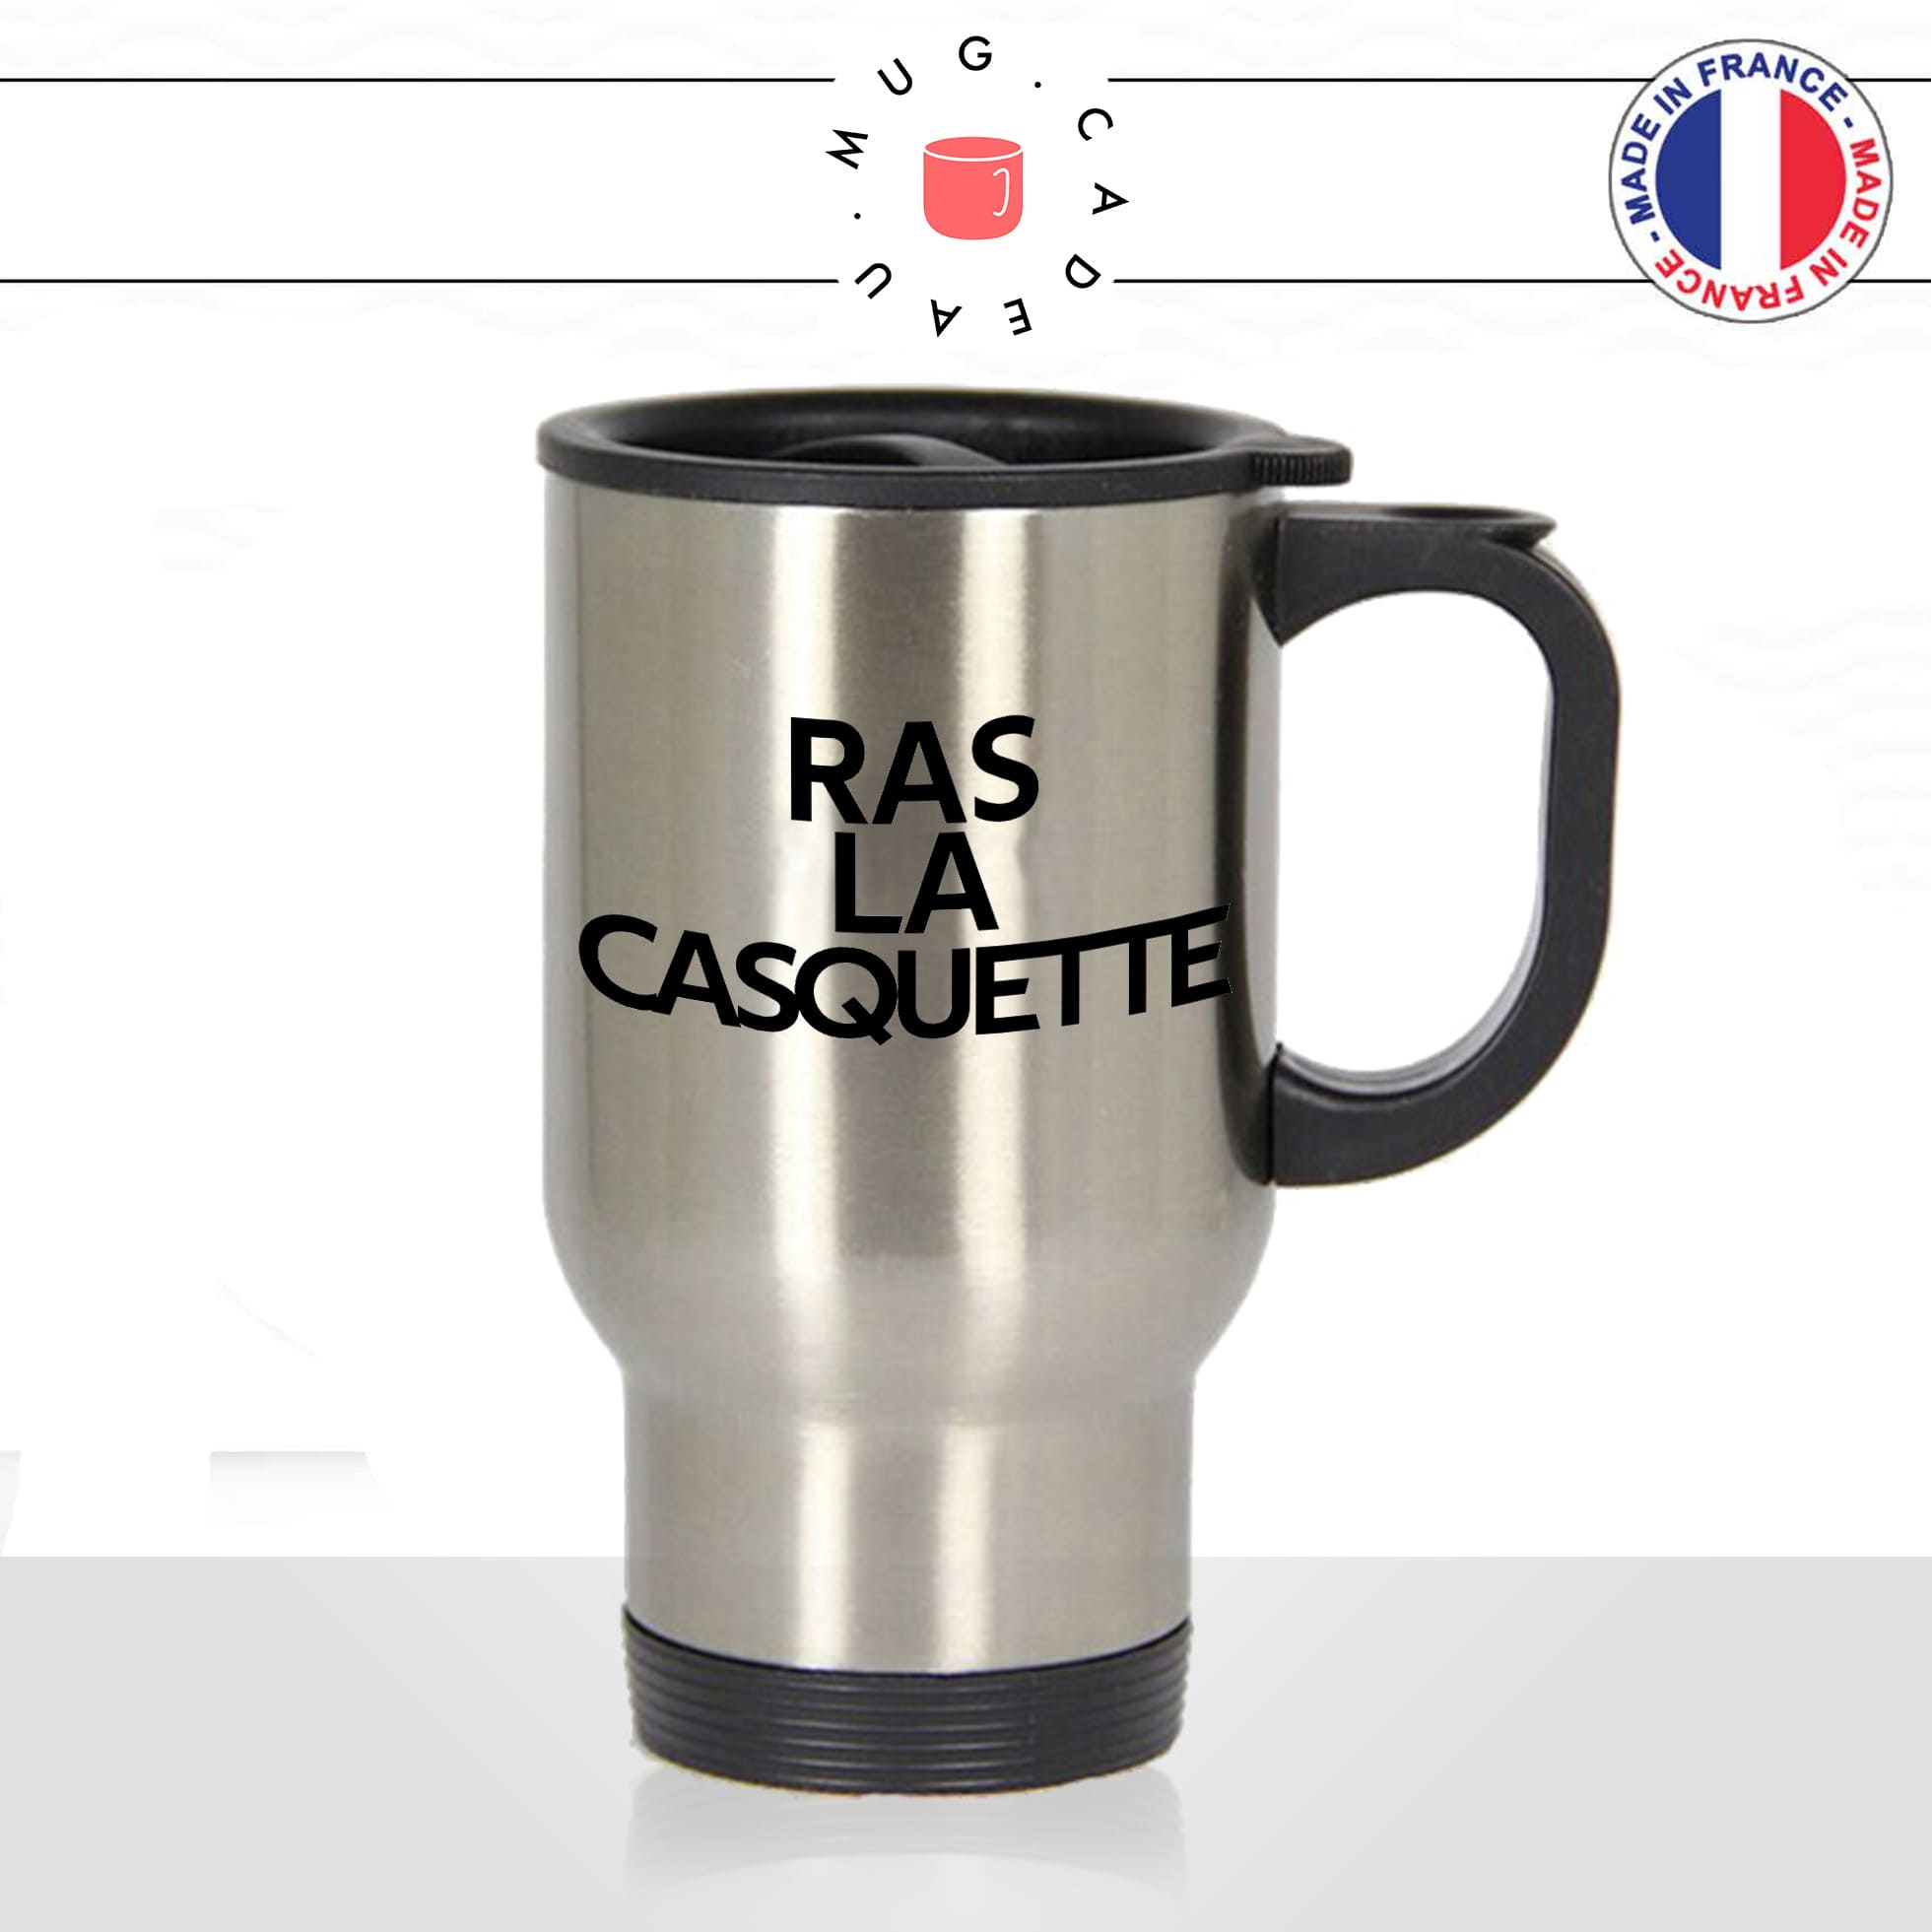 mug-tasse-thermos-isotherme-voyage-ras-la-casquette-expression-francaise-jen-ai-marre-humour-fun-idée-cadeau-originale-cool2